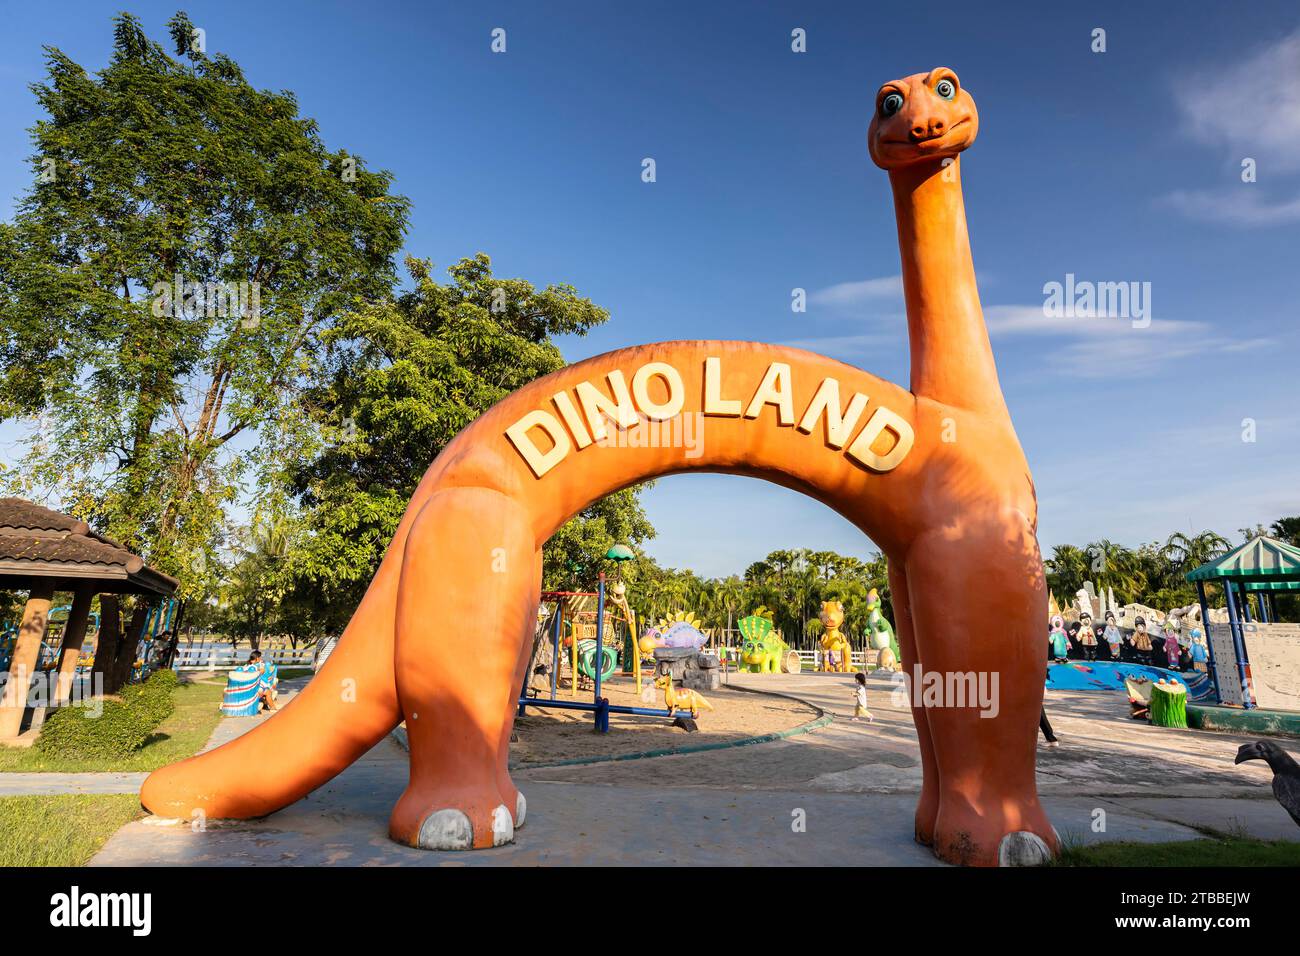 Parc de Nong Prajak, jardin d'enfants, objet géant de dinosaure fantastique, centre-ville, Udon Thani, Isan, Thaïlande, Asie du Sud-est, Asie Banque D'Images